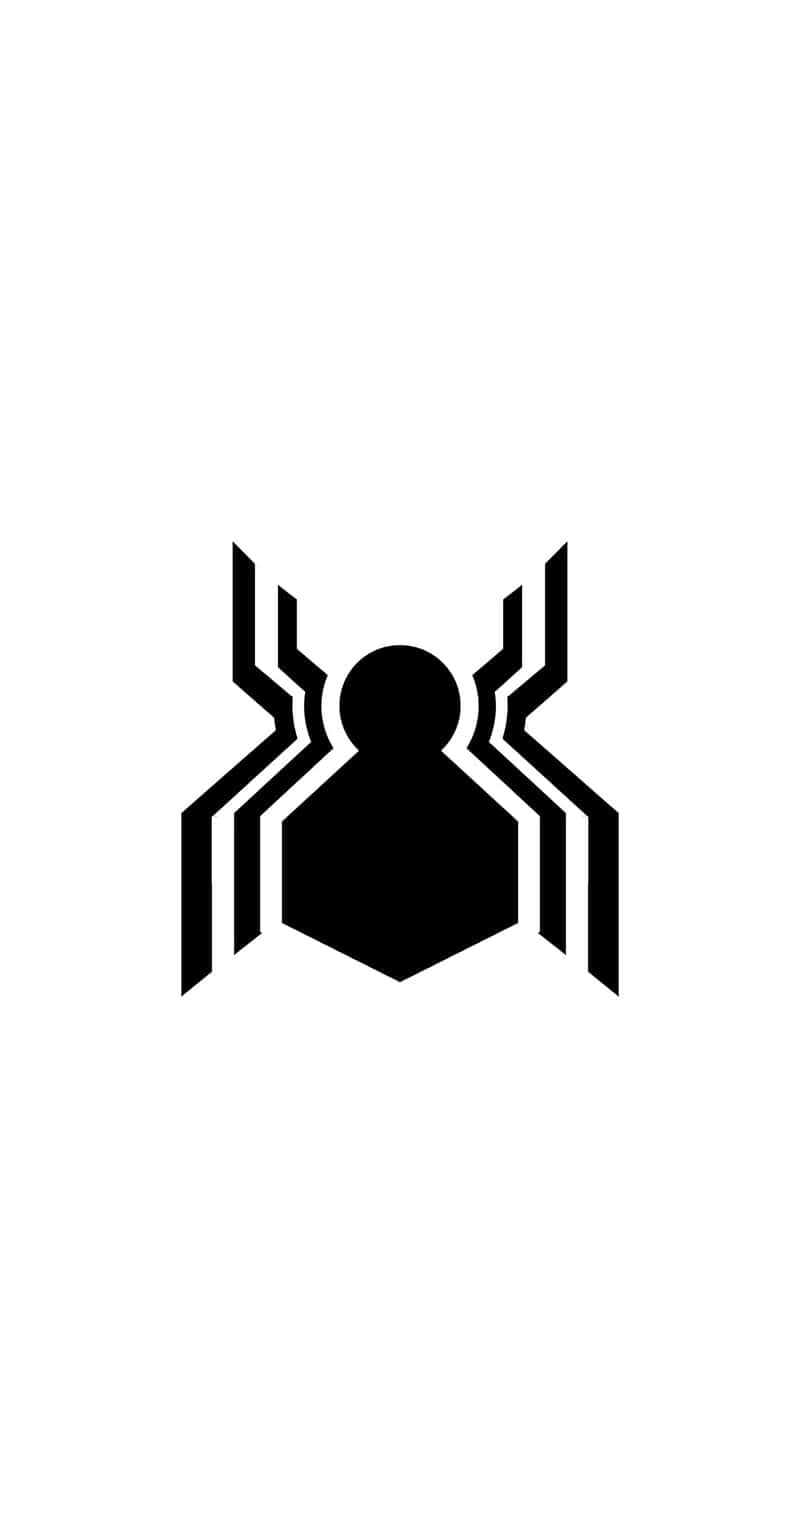 Imagendel Logo De Spiderman En Playstation 4 Fondo de pantalla